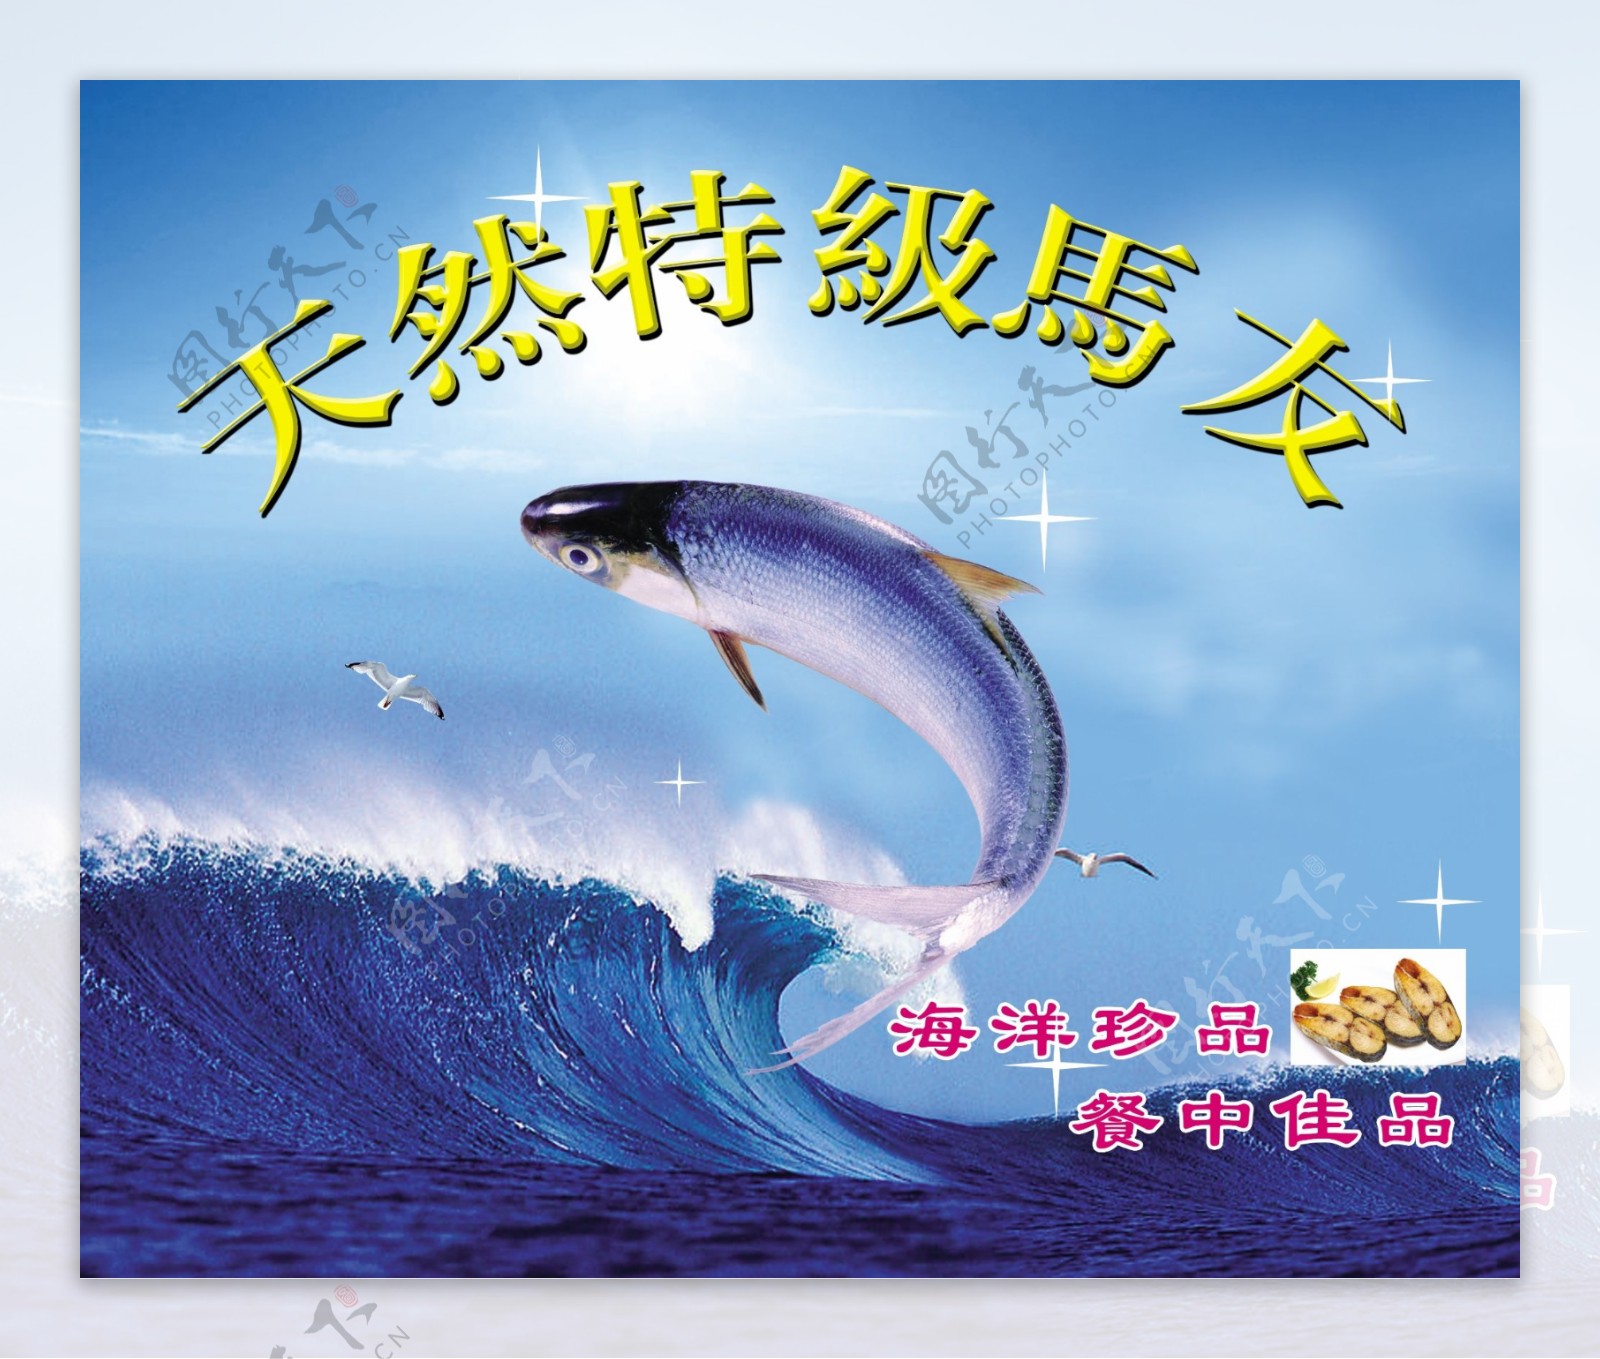 马友鱼海报设计波涛汹涌海浪冷色调海鲜豪放激情翻跃马友鱼鱼图片